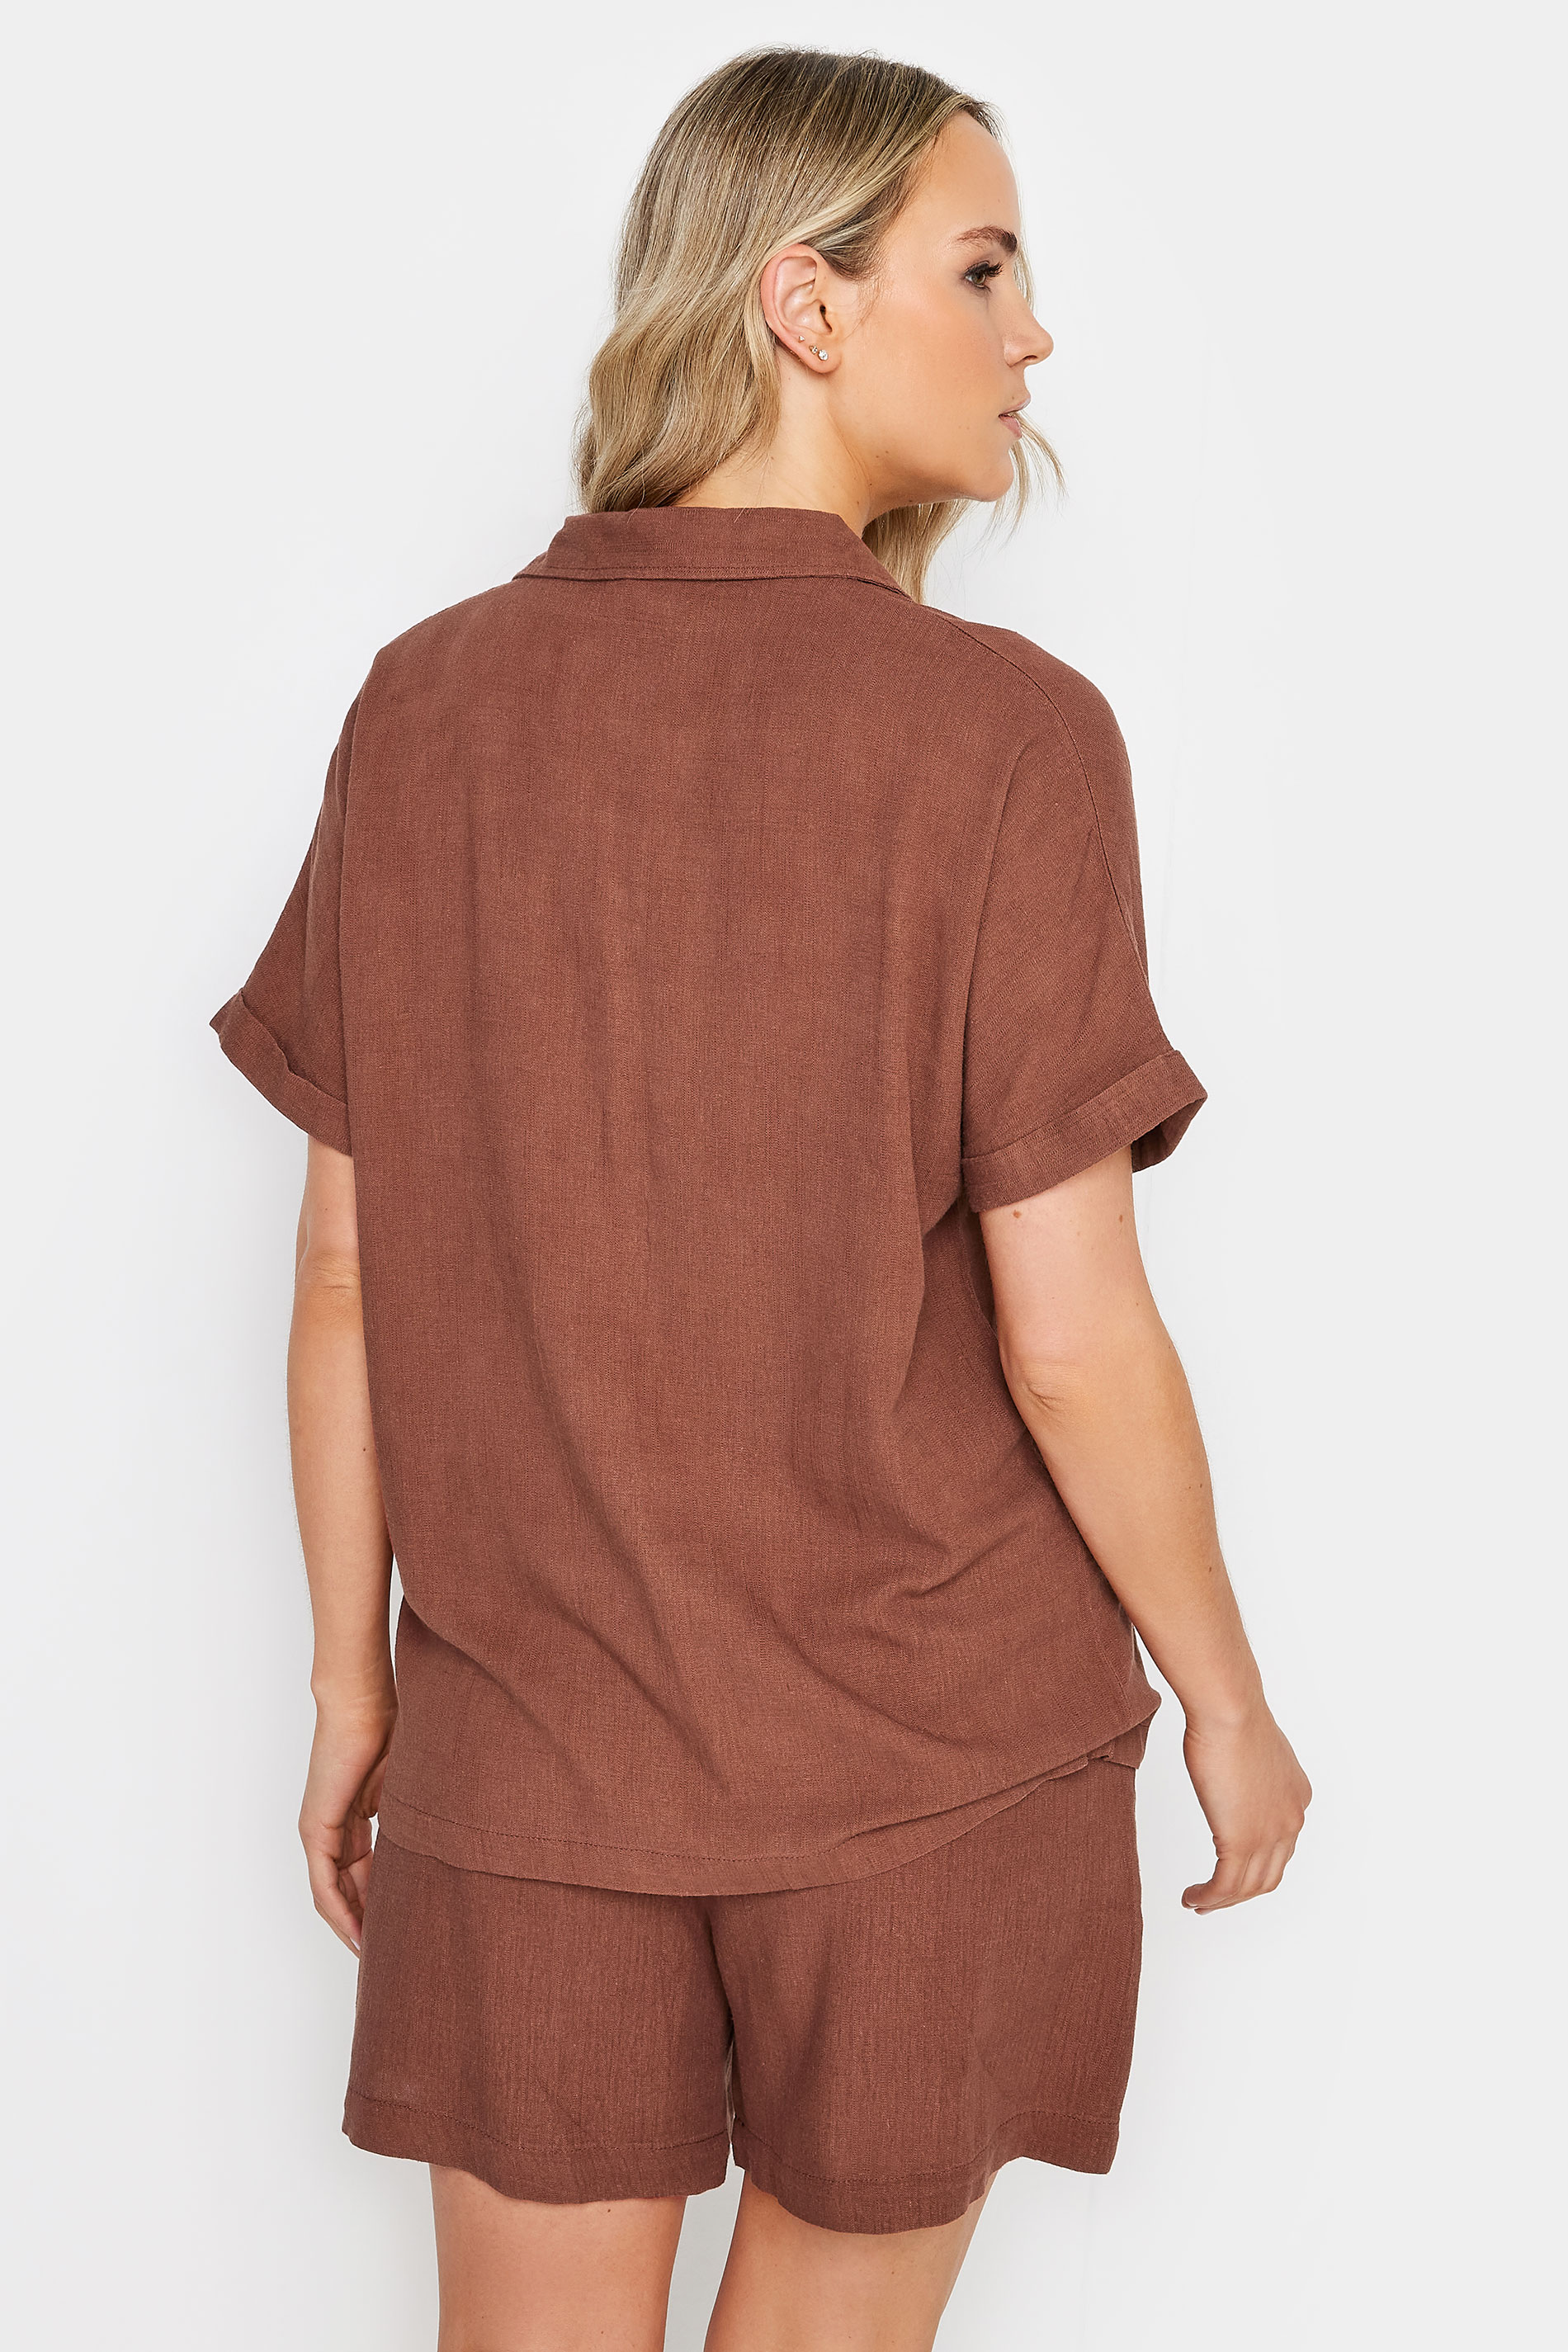 LTS Tall Womens Brown Linen Short Sleeve Shirt | Long Tall Sally 3